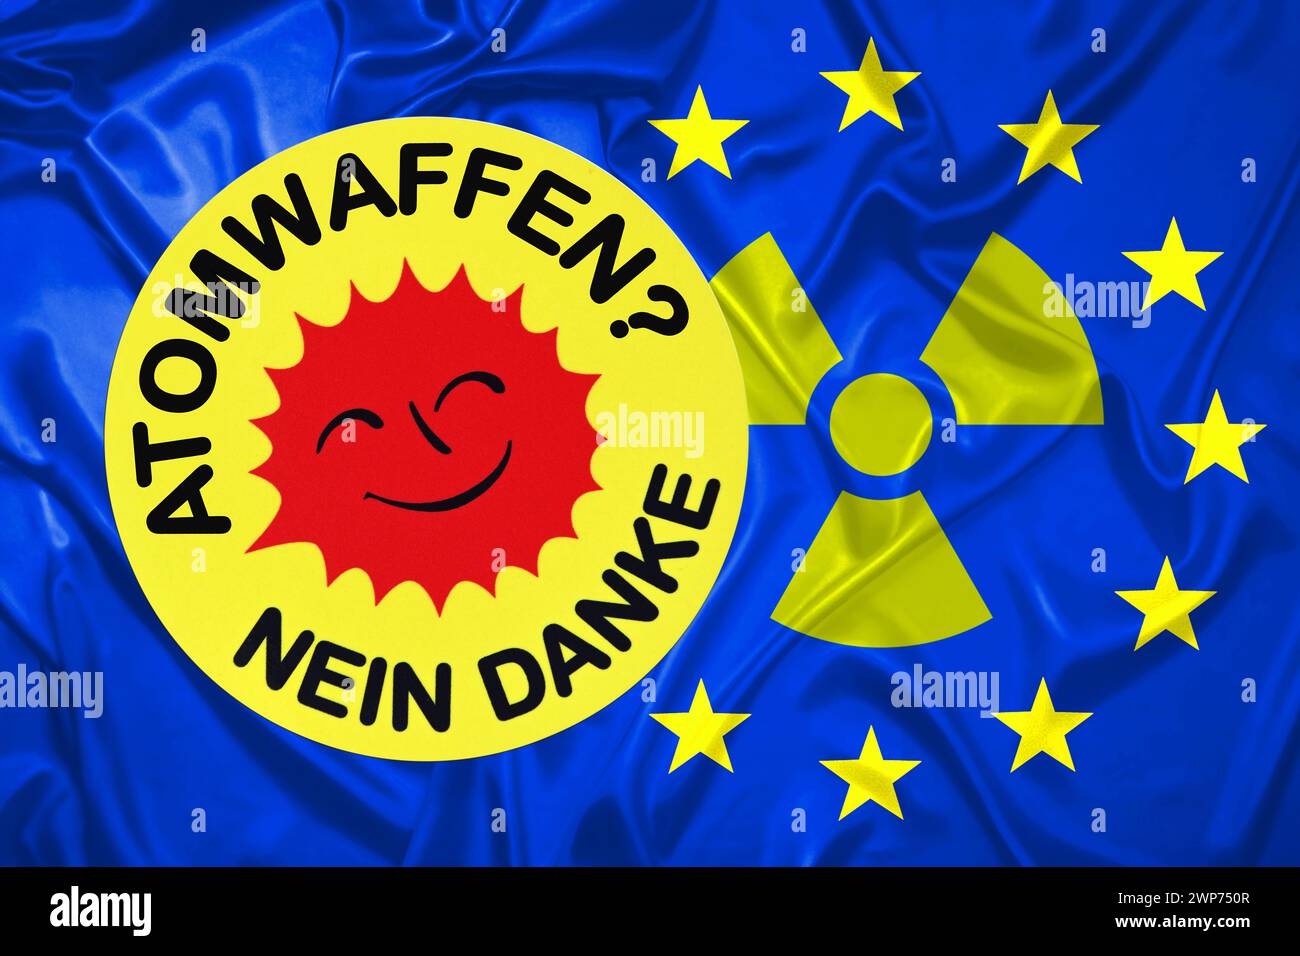 FOTOMONTAGE, Aufkleber mit Aufschrift Atomwaffen? - Nein danke auf EU-Fahne mit Radioaktivitätszeichen Stock Photo